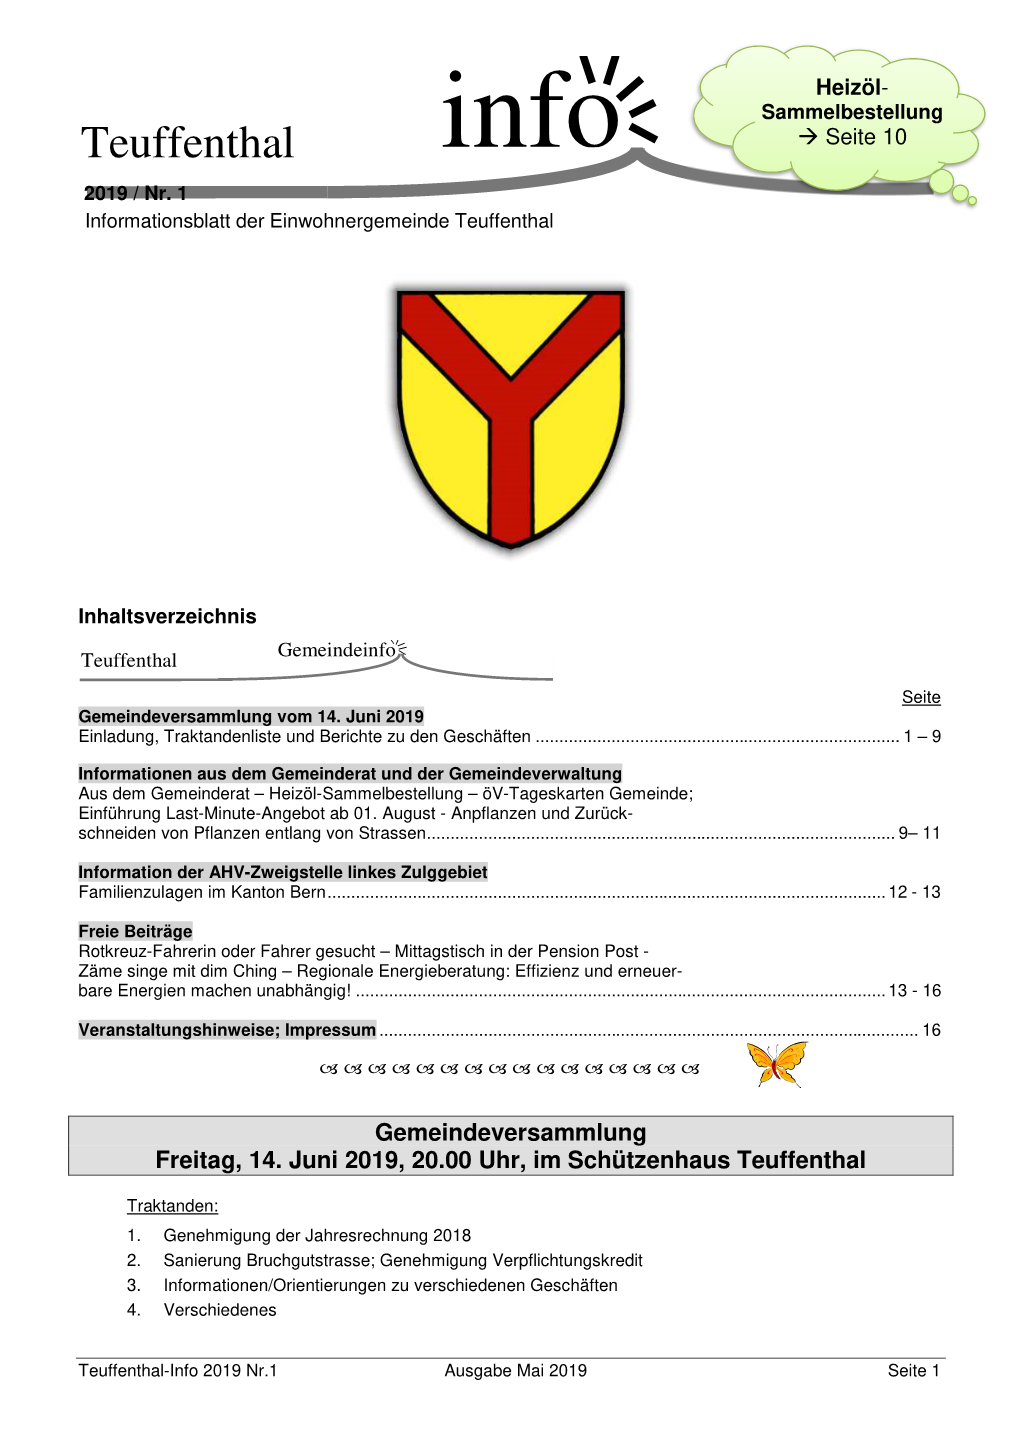 Teuffenthal-Info 2019, Nr. 1